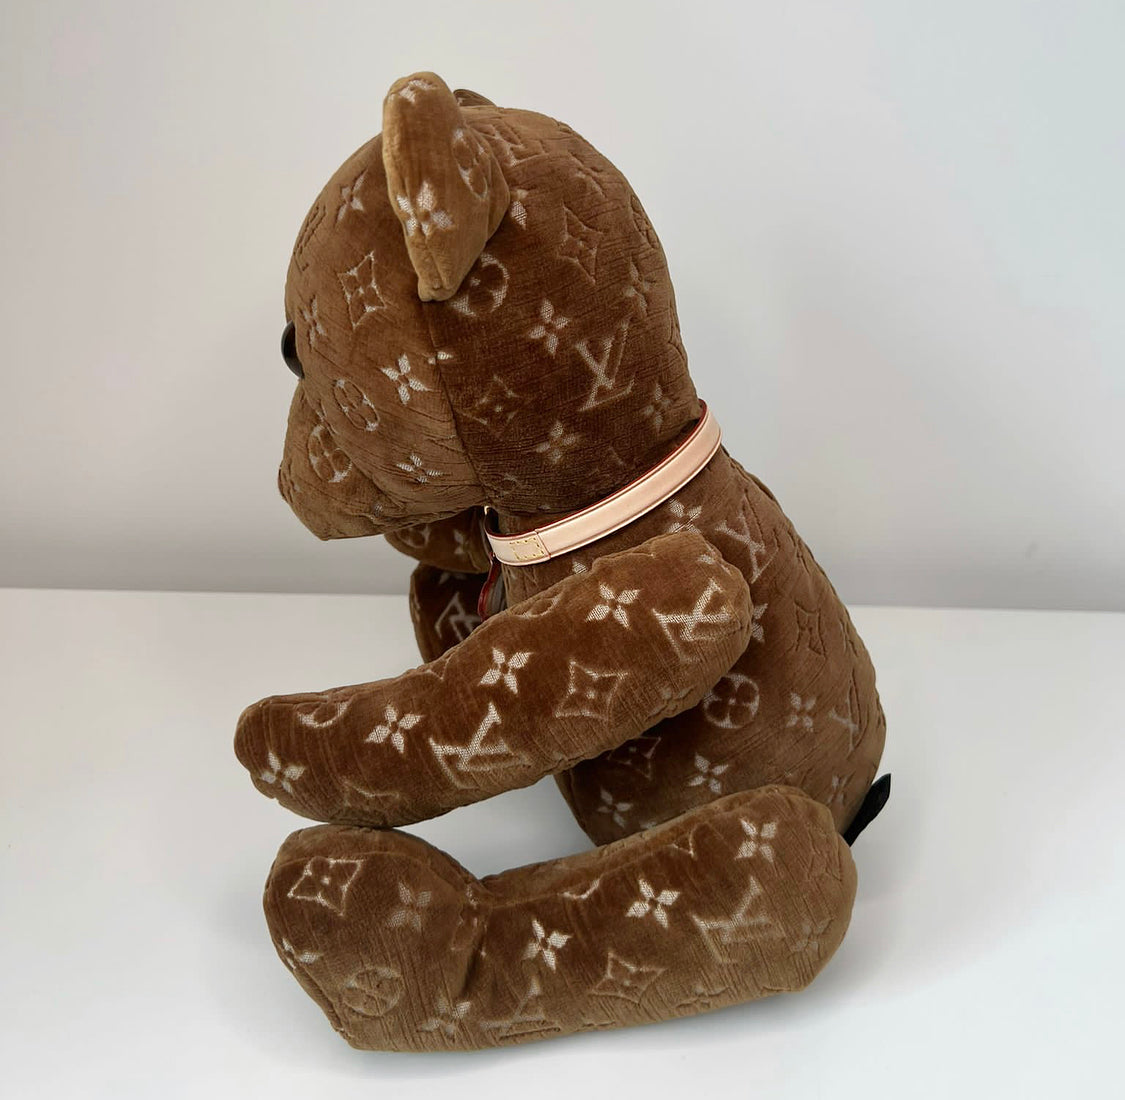 Louis Vuitton DouDou Teddy Bear GI0502 2021 21ss Pre-Collection